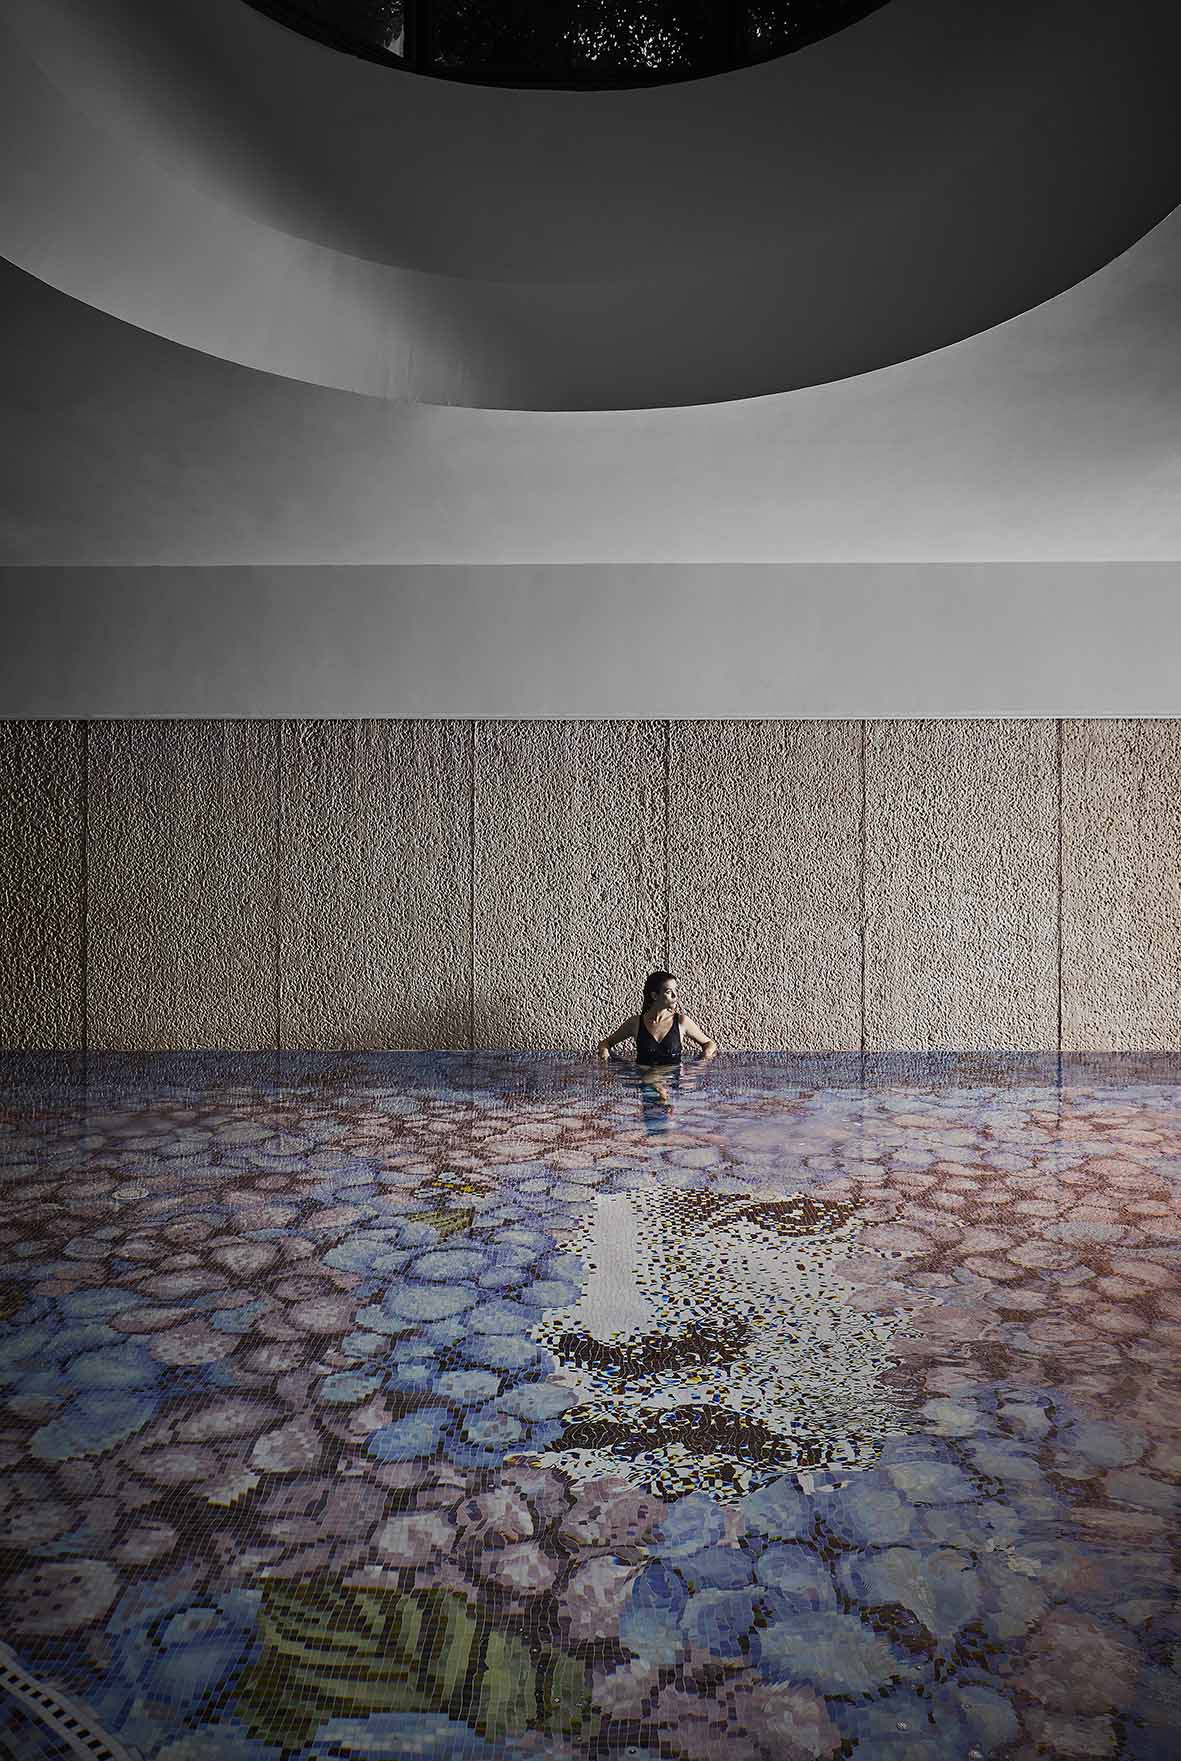 Nuova piscina a mosaico by Bisazza e design Fornasetti a L'Albereta